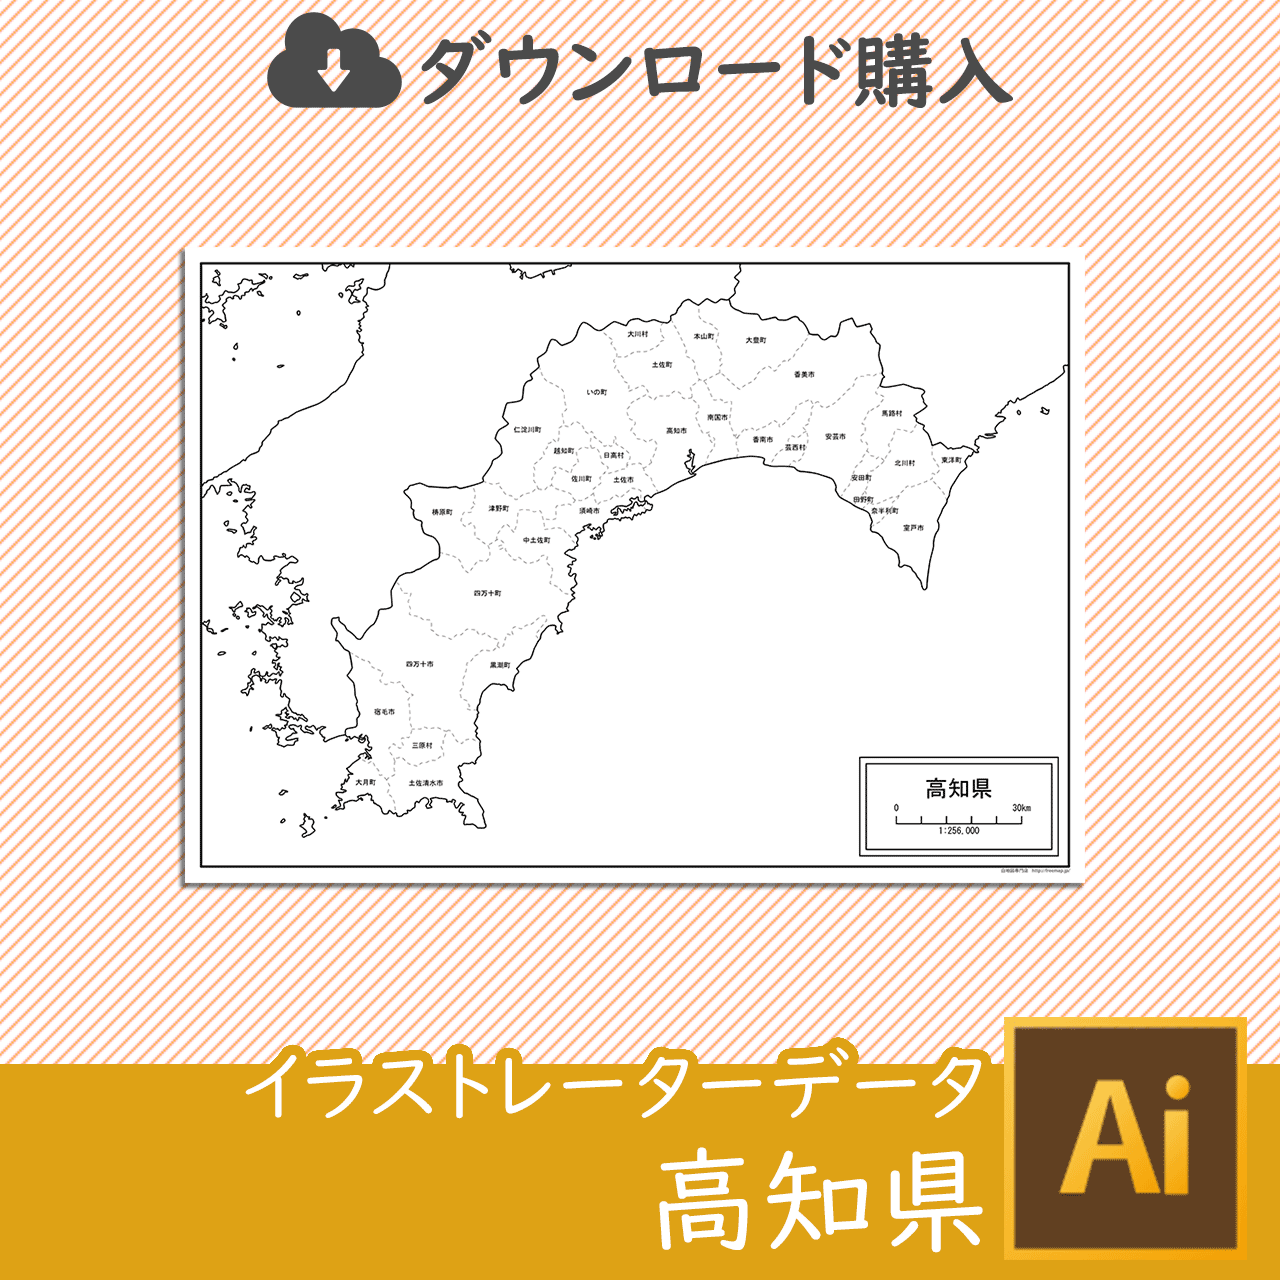 高知県の白地図データのサムネイル画像